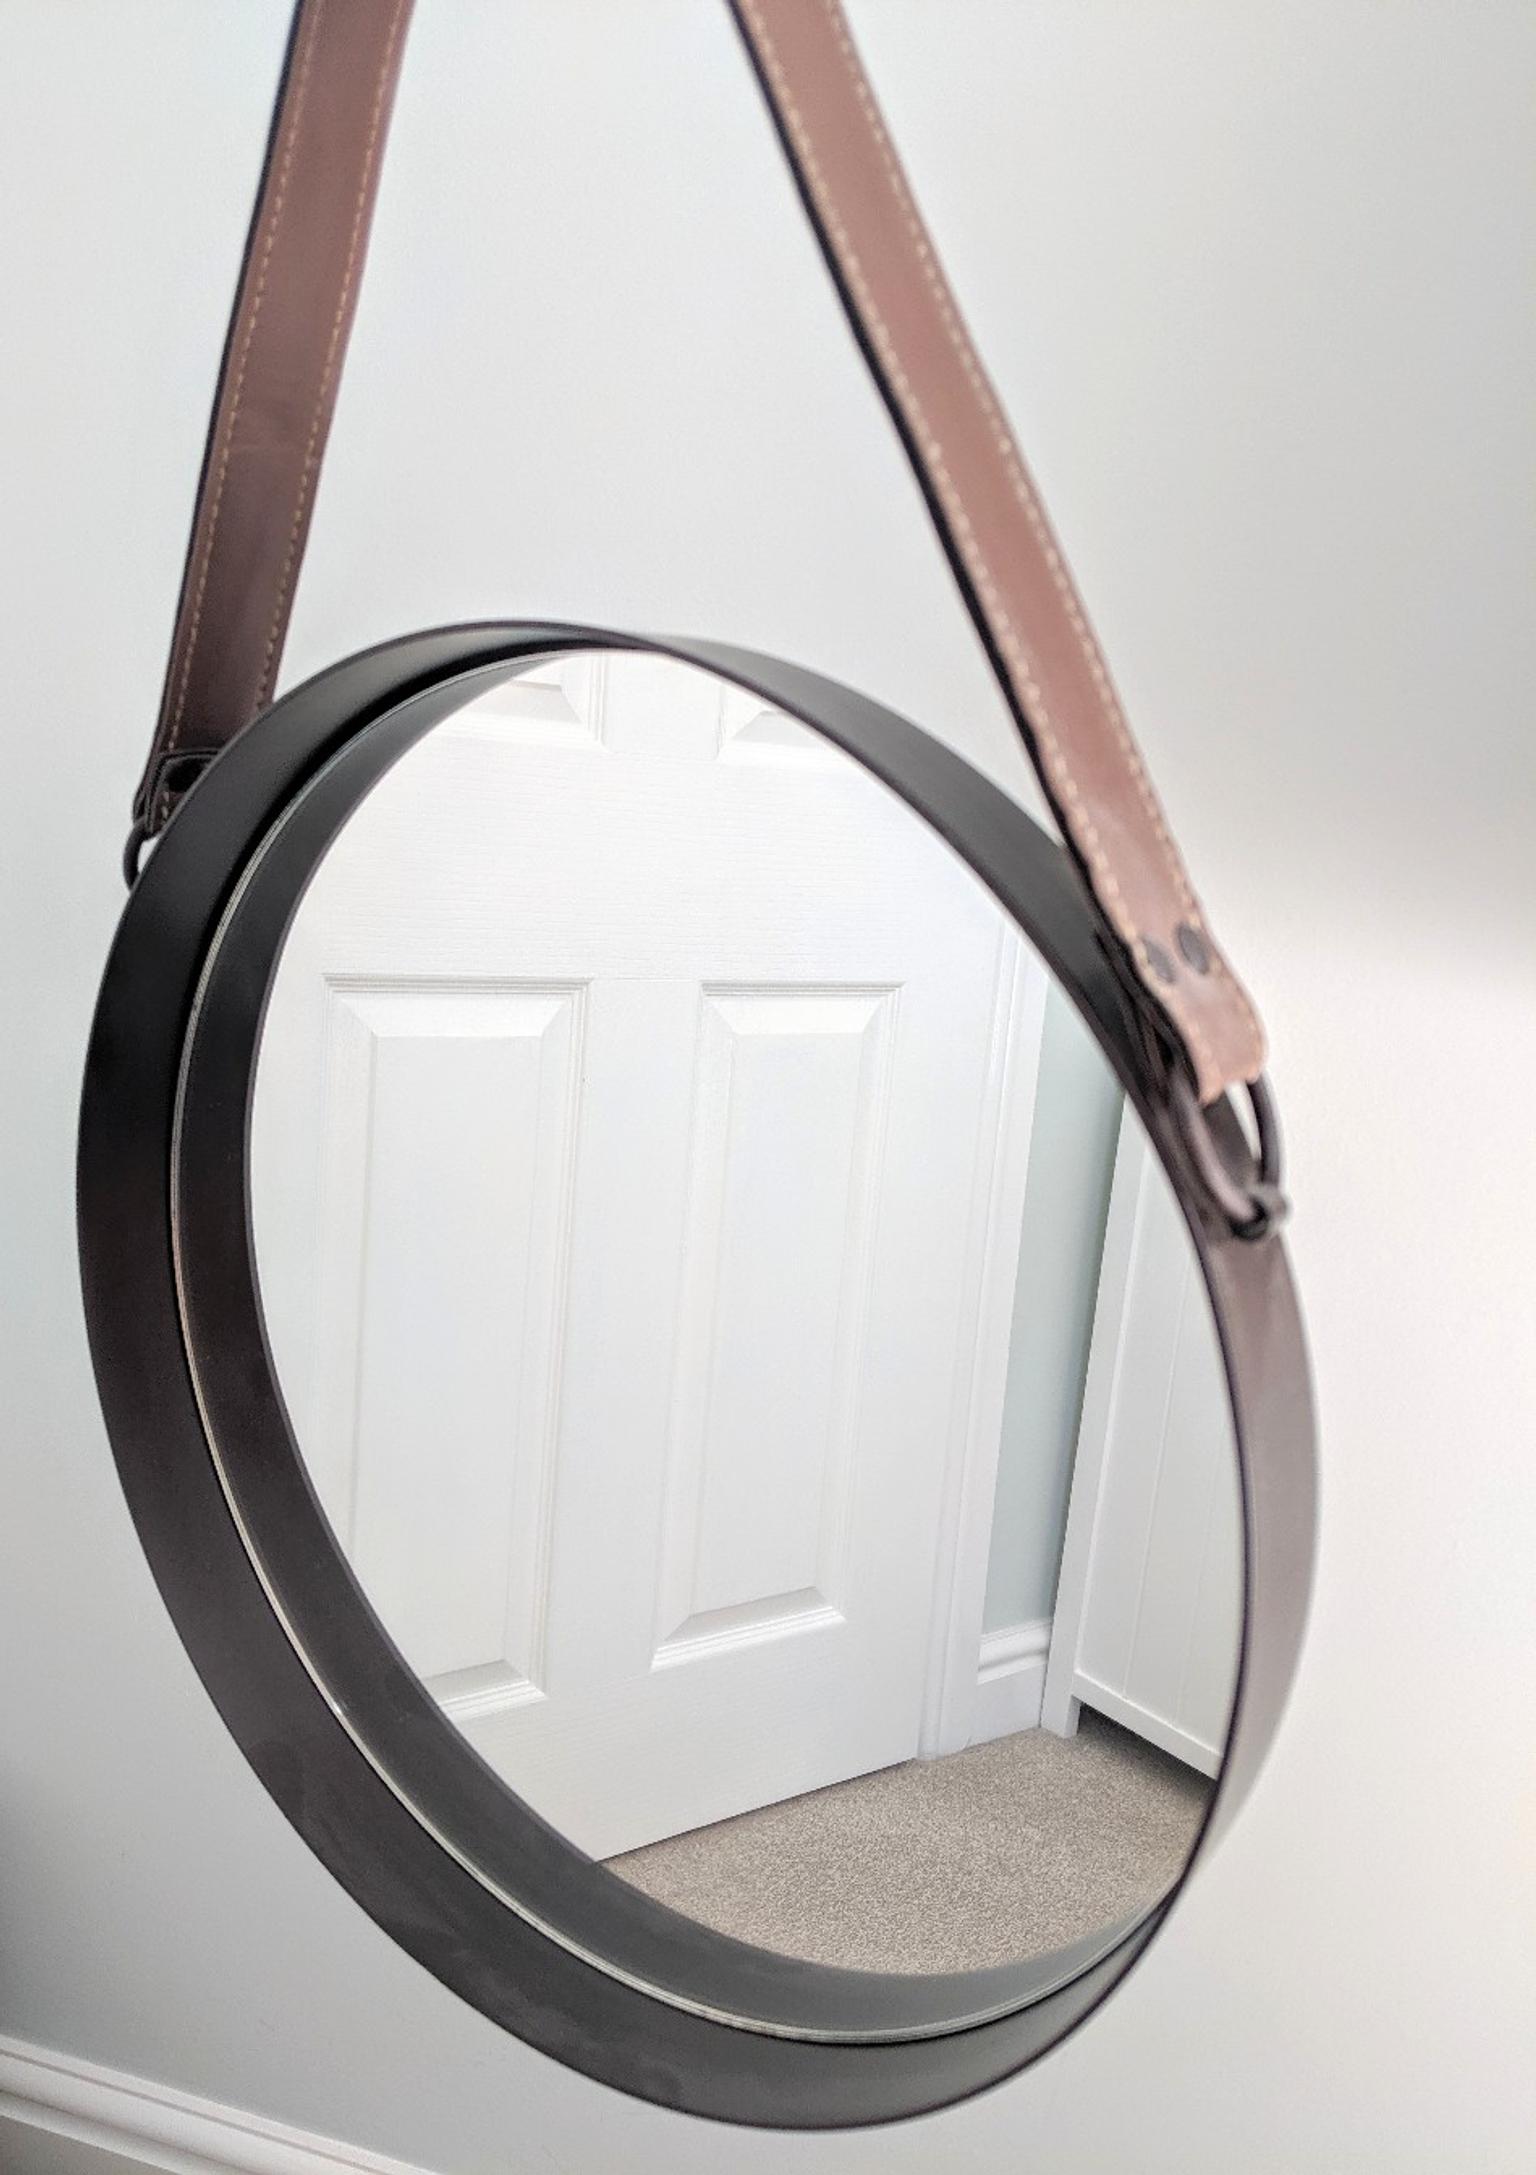 Round Mirror With Leather Strap Detail, Round Hanging Mirror With Leather Strap